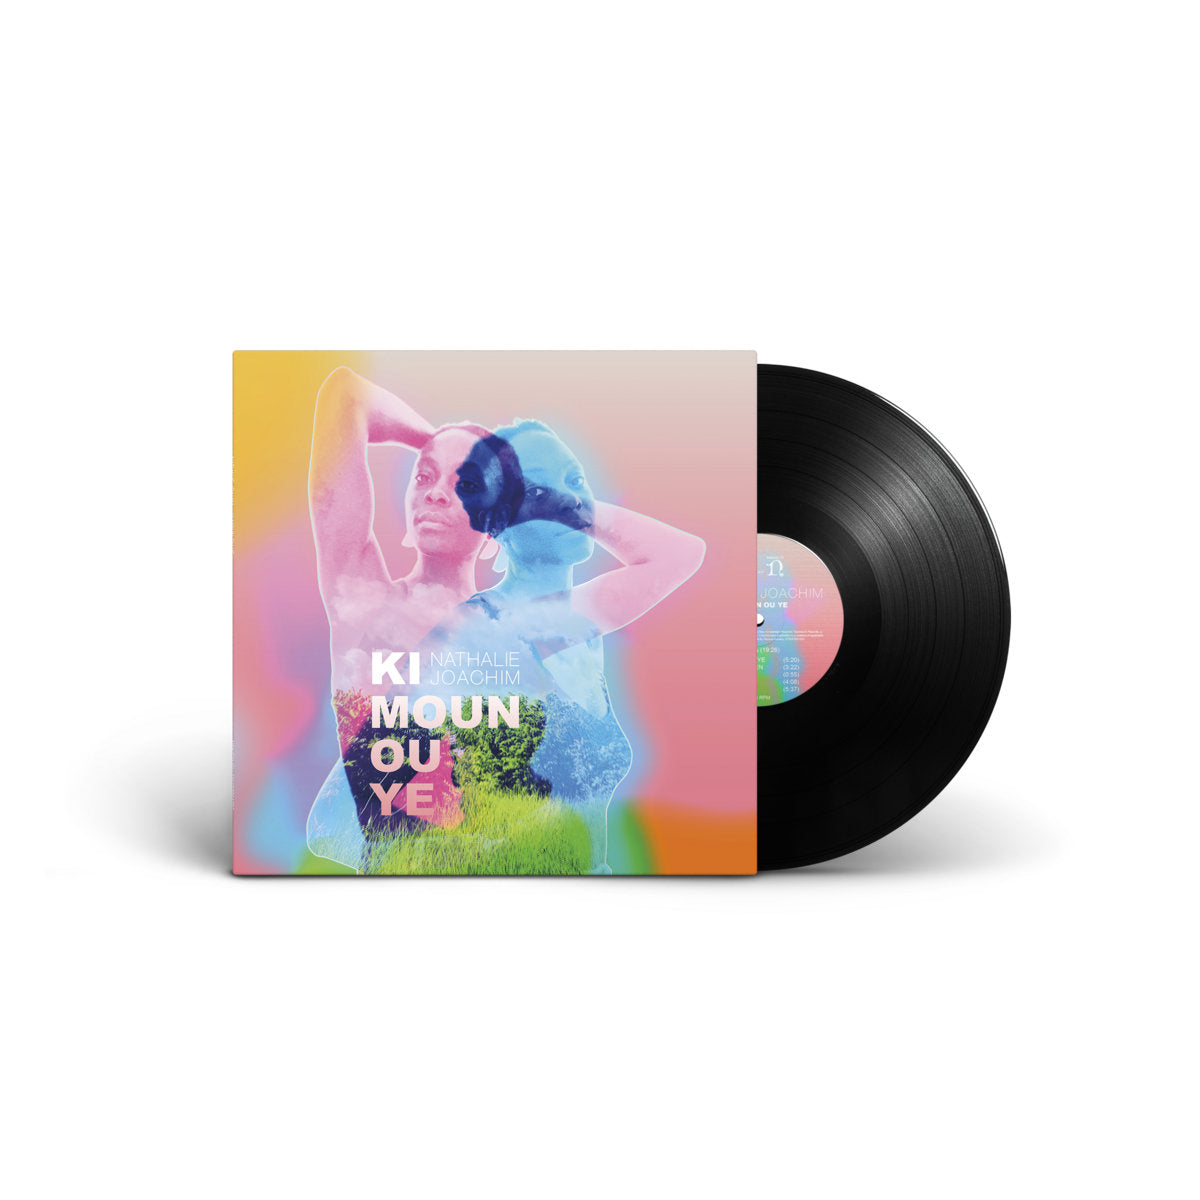 Nathalie Joachim - Ki Moun Ou Ye: Vinyl LP